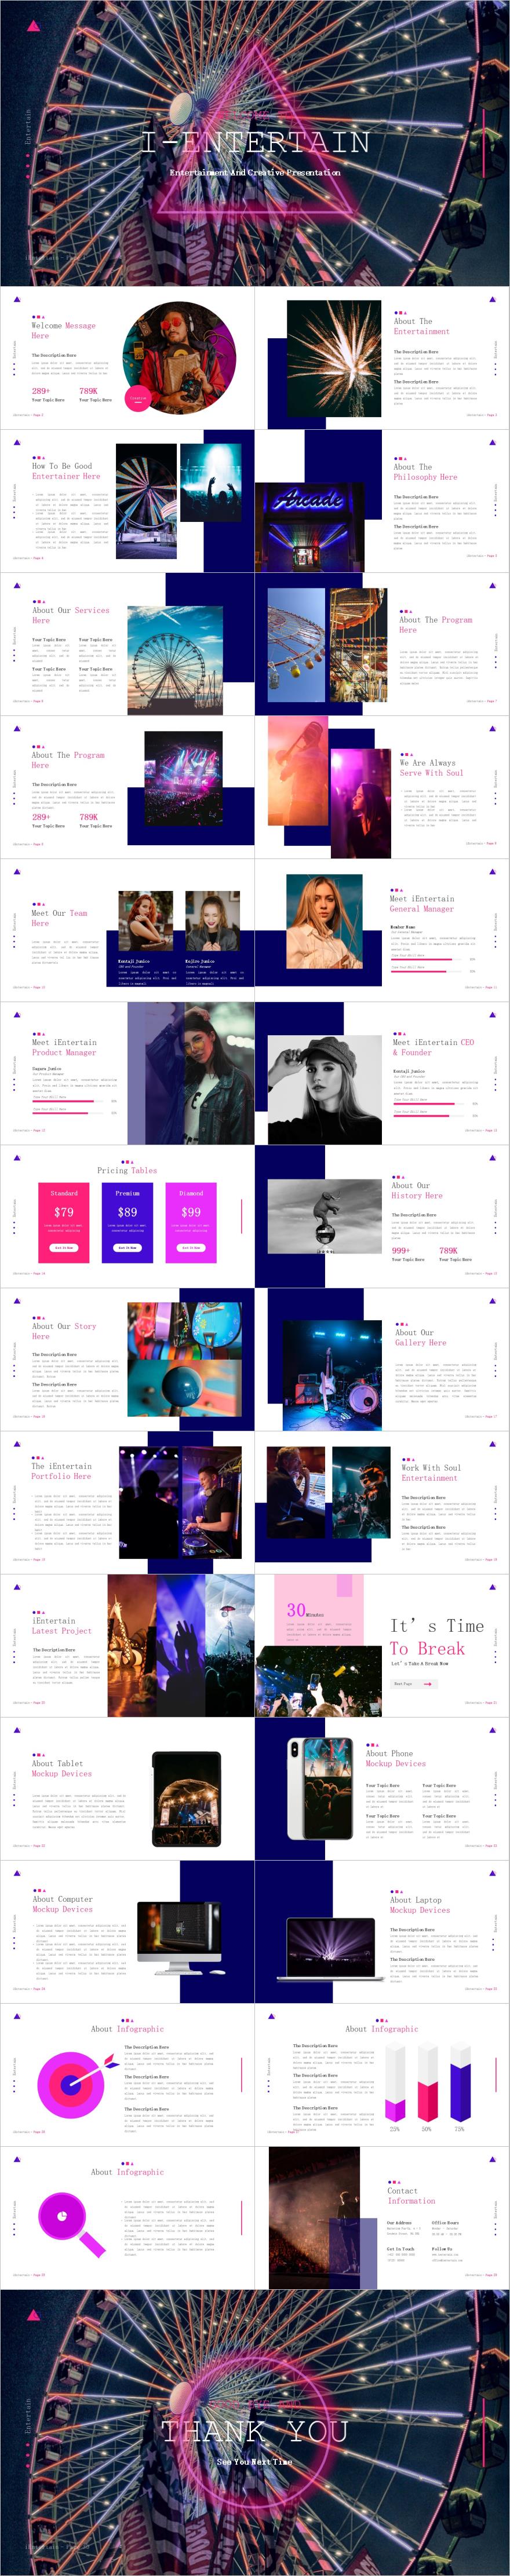 紫色杂志风娱乐活动宣传介绍PPT模板下载